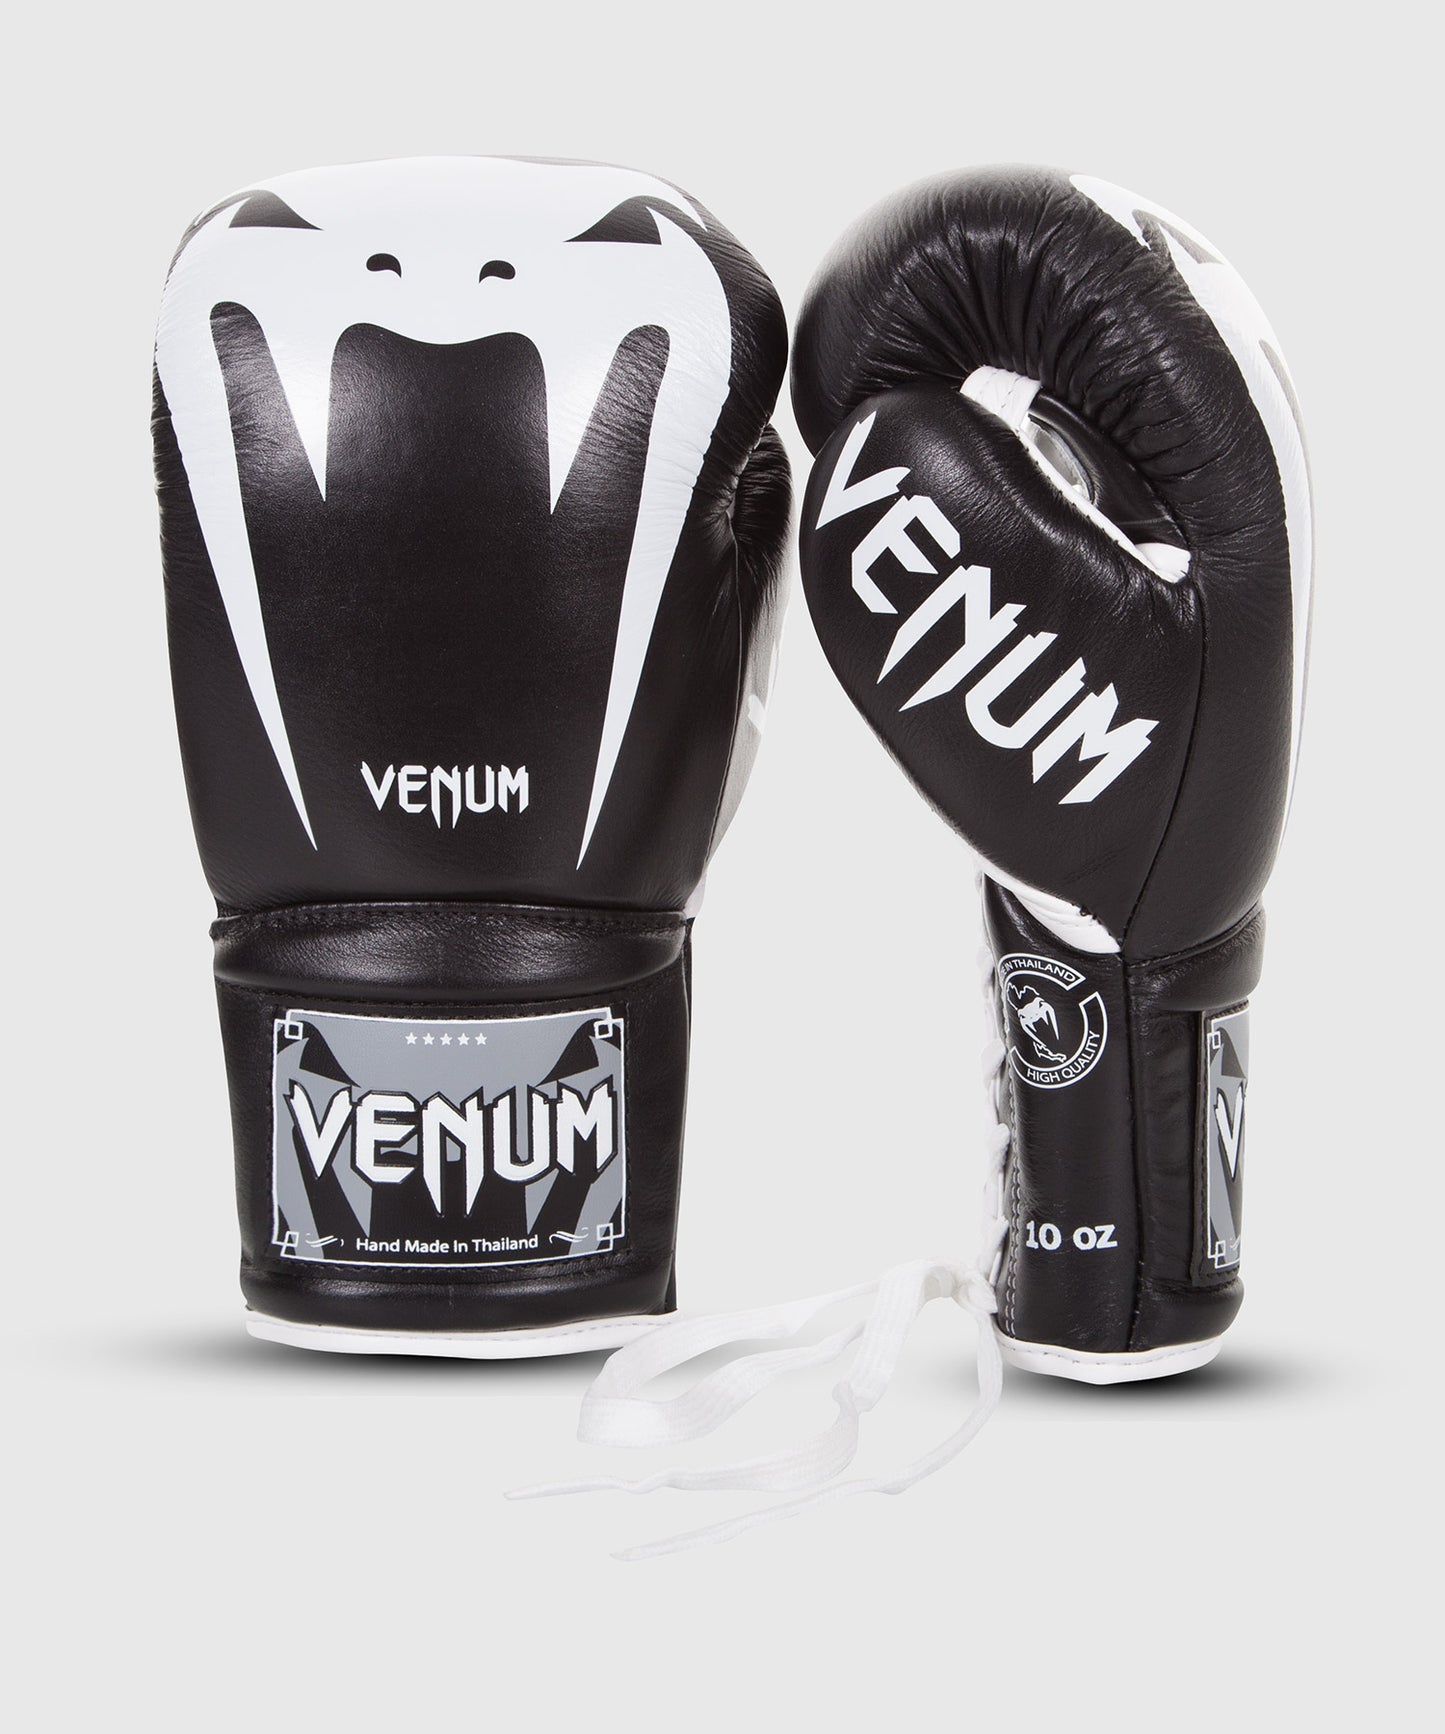 Venum Giant 3.0 Boxhandschuhe - Nappaleder - Mit Schnürung - Schwarz